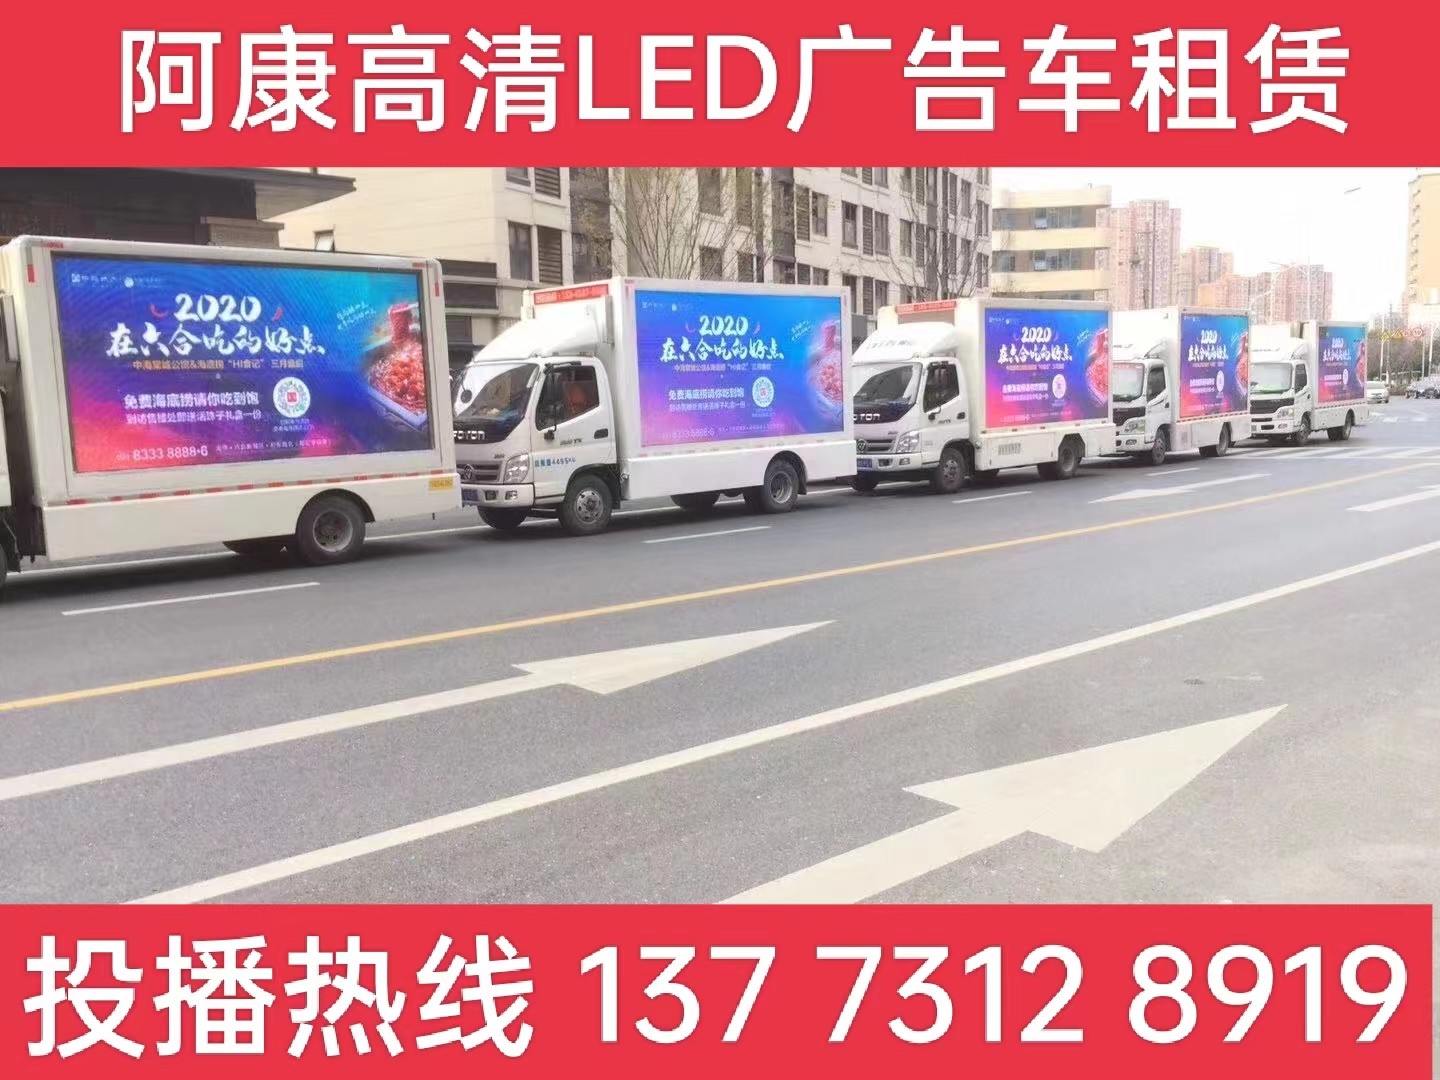 芜湖宣传车出租-海底捞LED广告